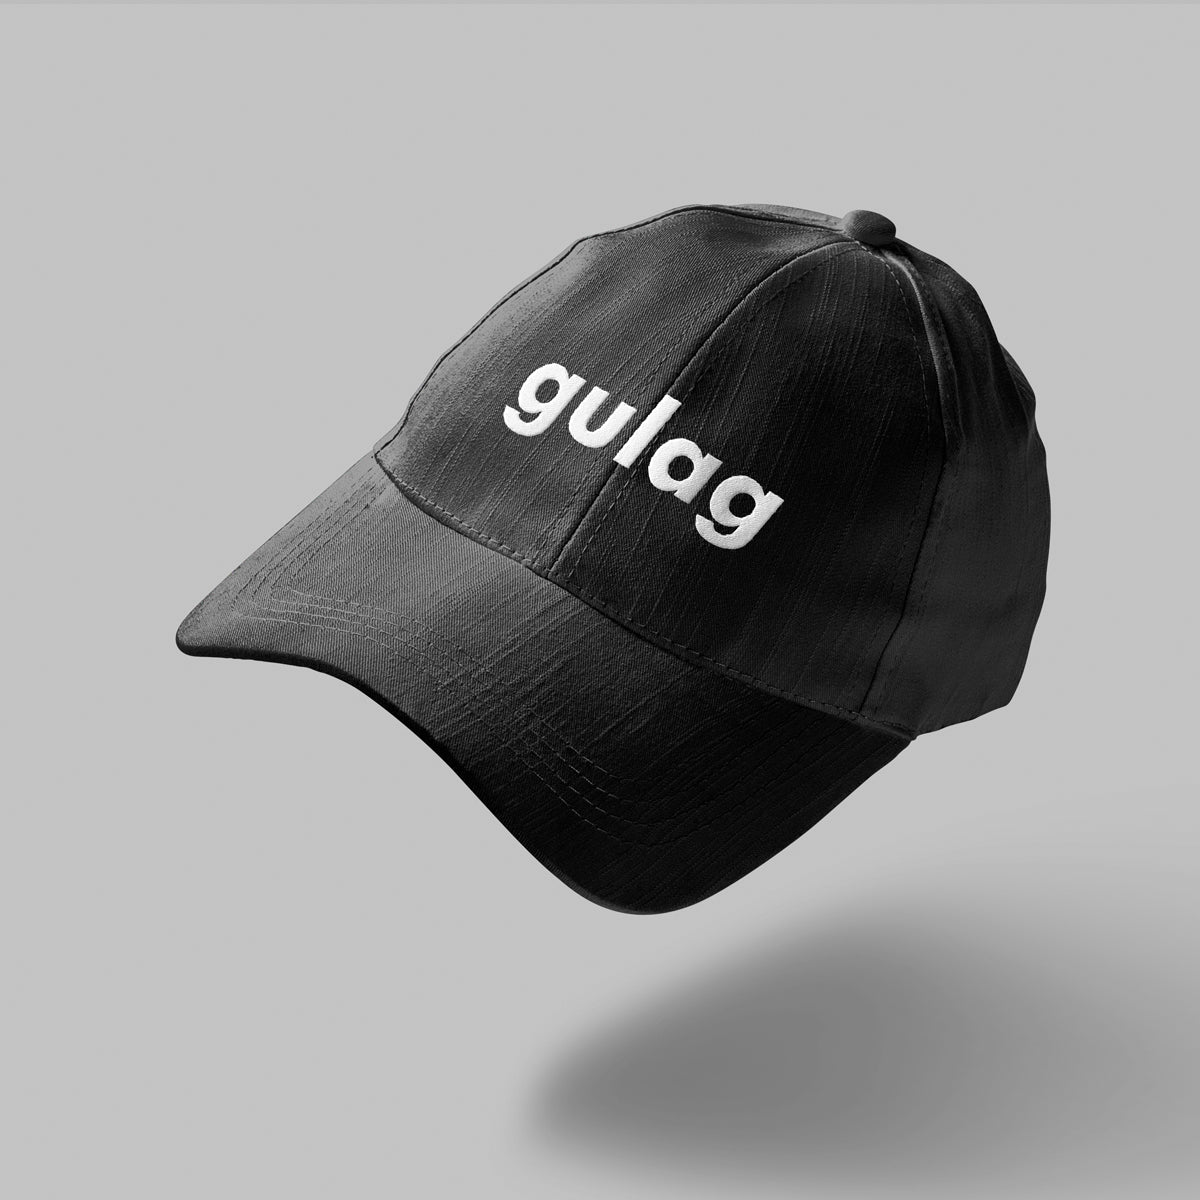 Gawddamm_it - gulag dad hat